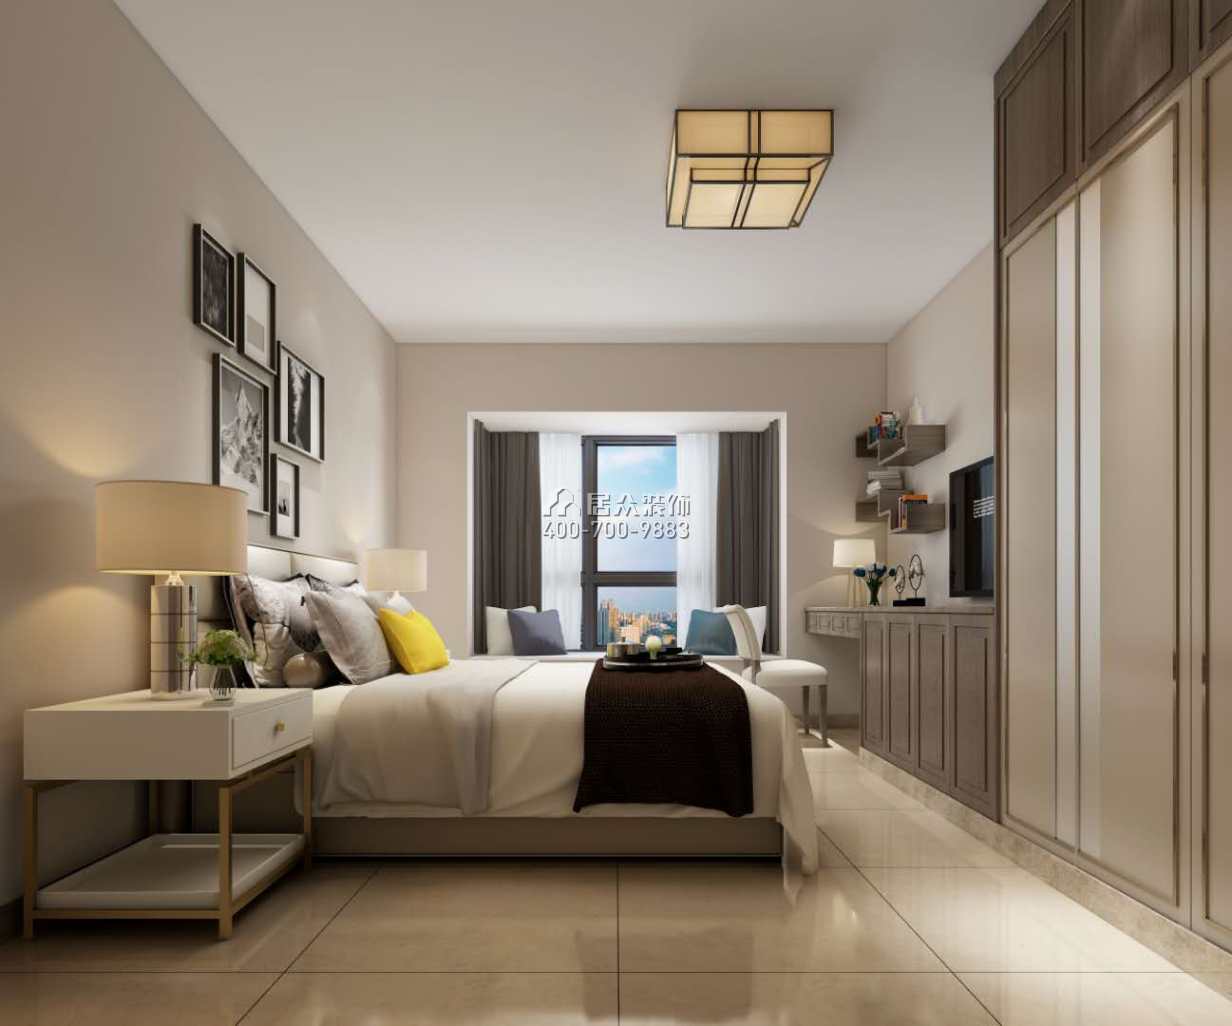 锦江豪苑137平方米中式风格平层户型卧室装修效果图